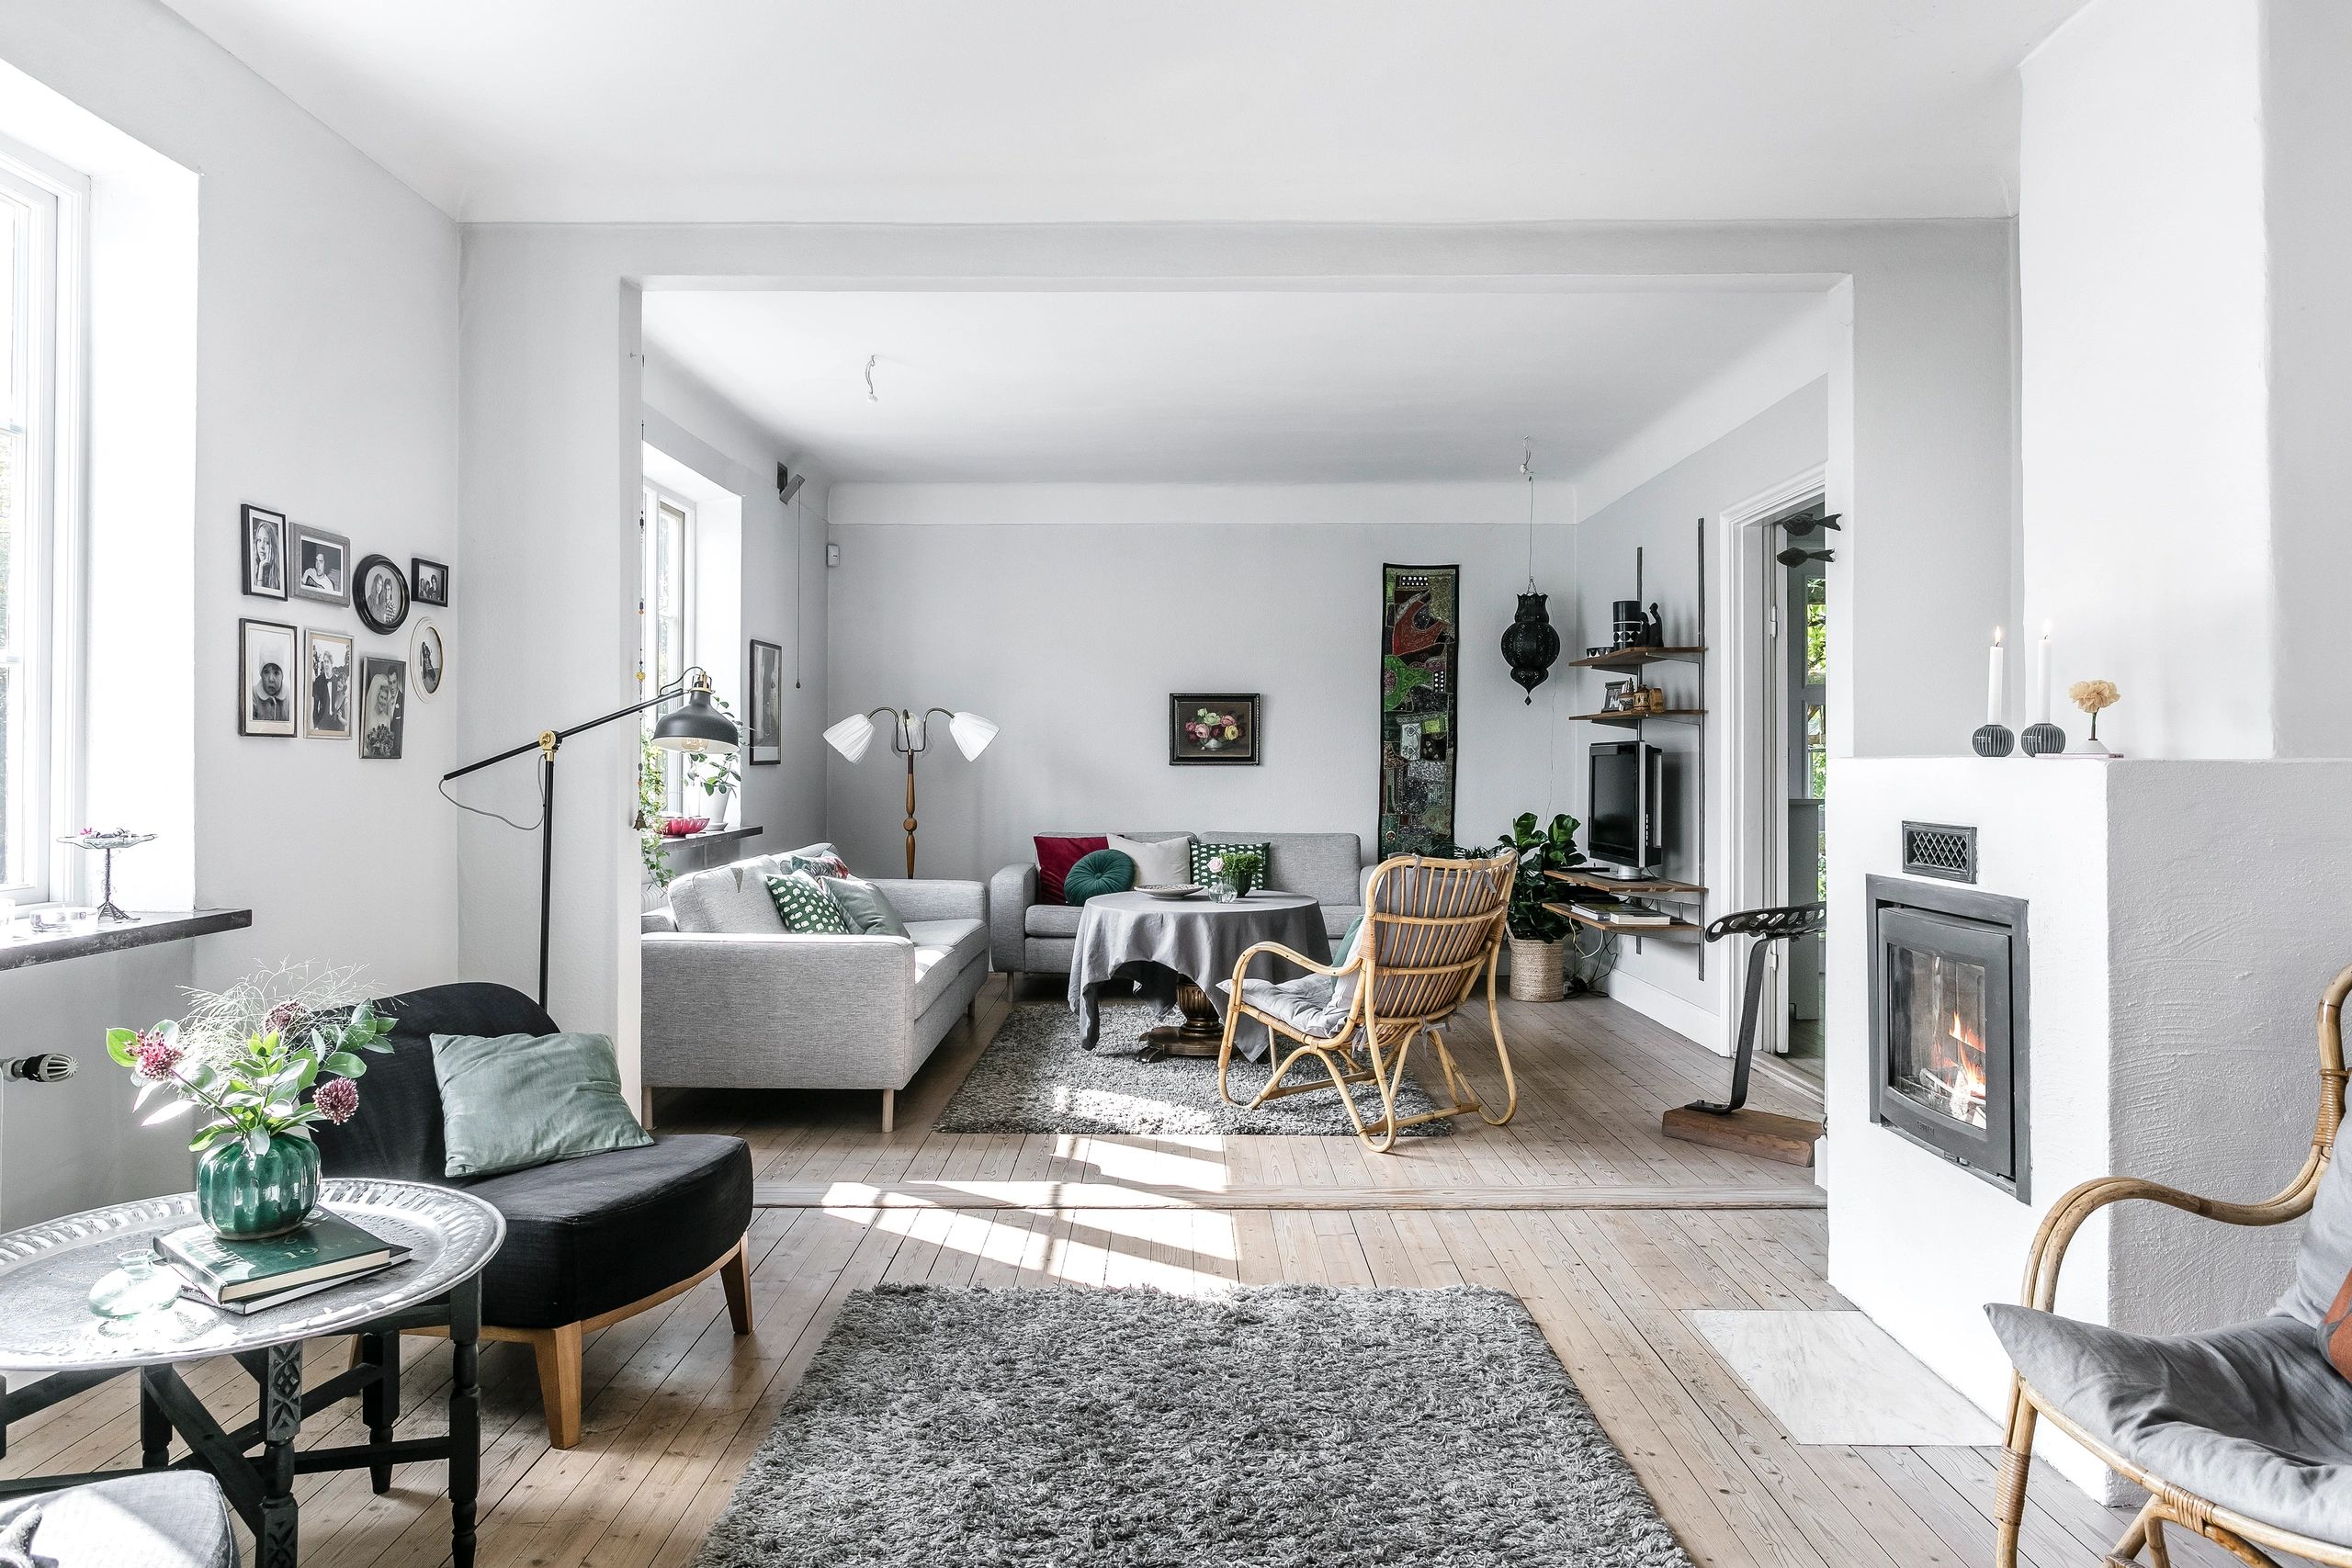 SwedBNB Property Management BRF Engagement Model
Housing Association
Rental Sweden
Stockholm
Airbnb
